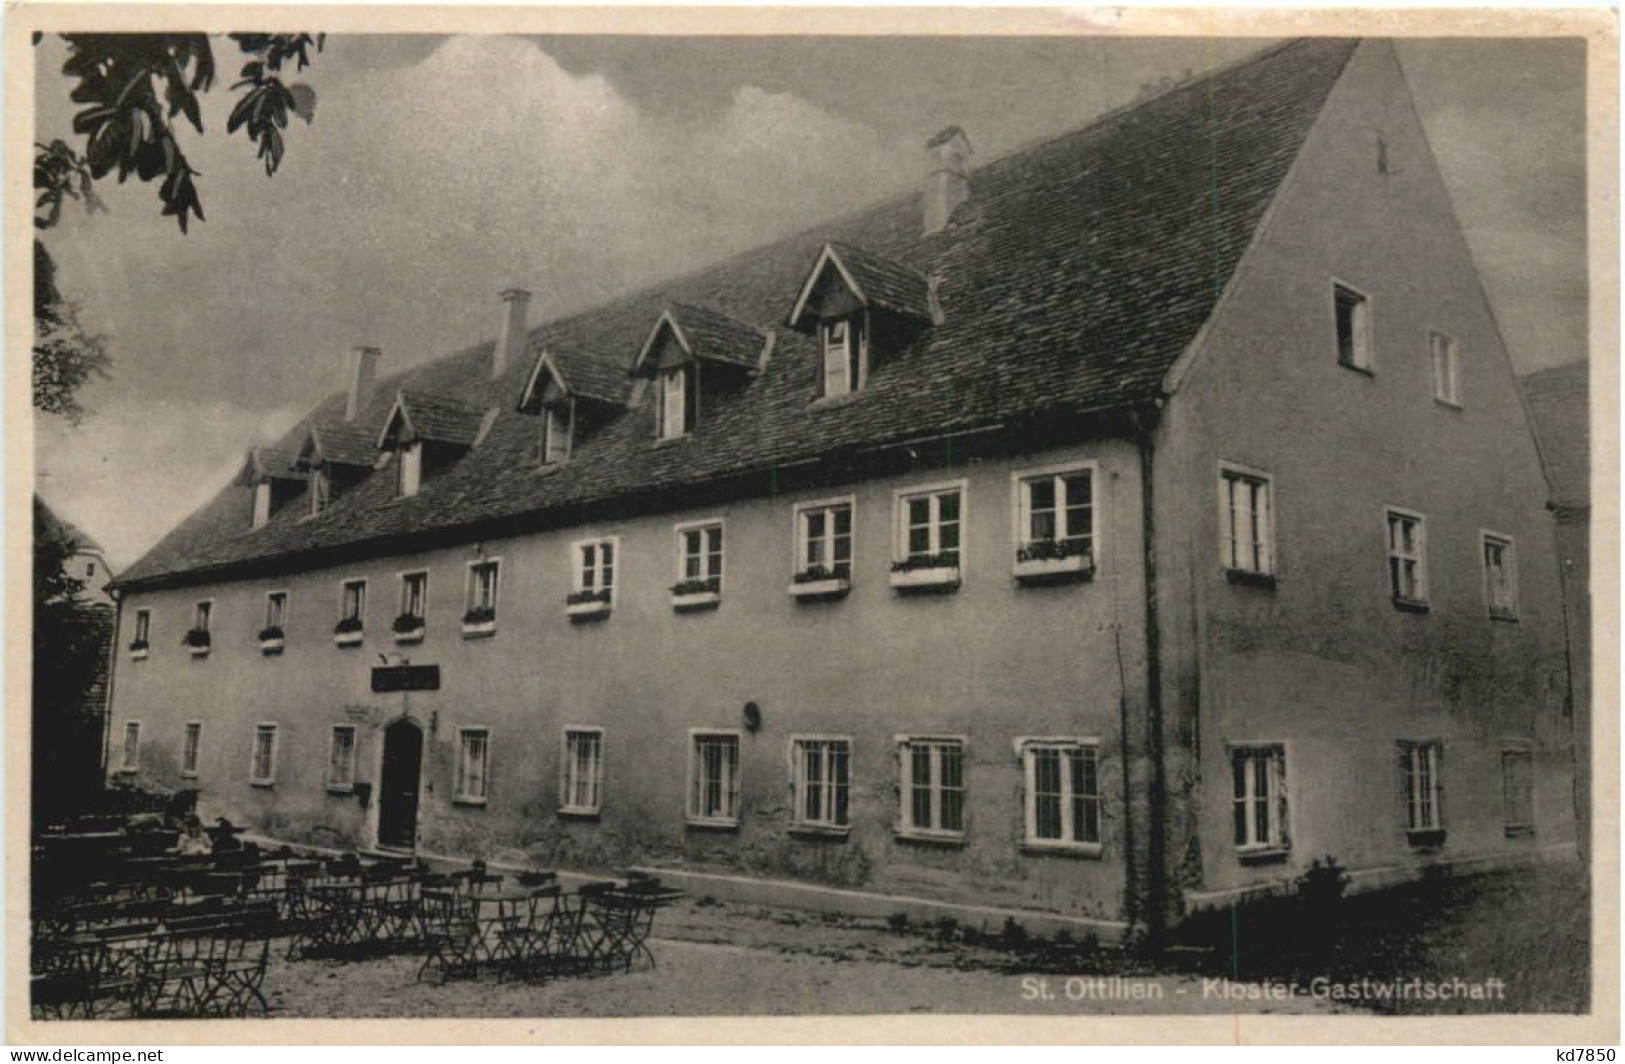 St. Ottilien, Kloster, Gastwirtschaft - Landsberg